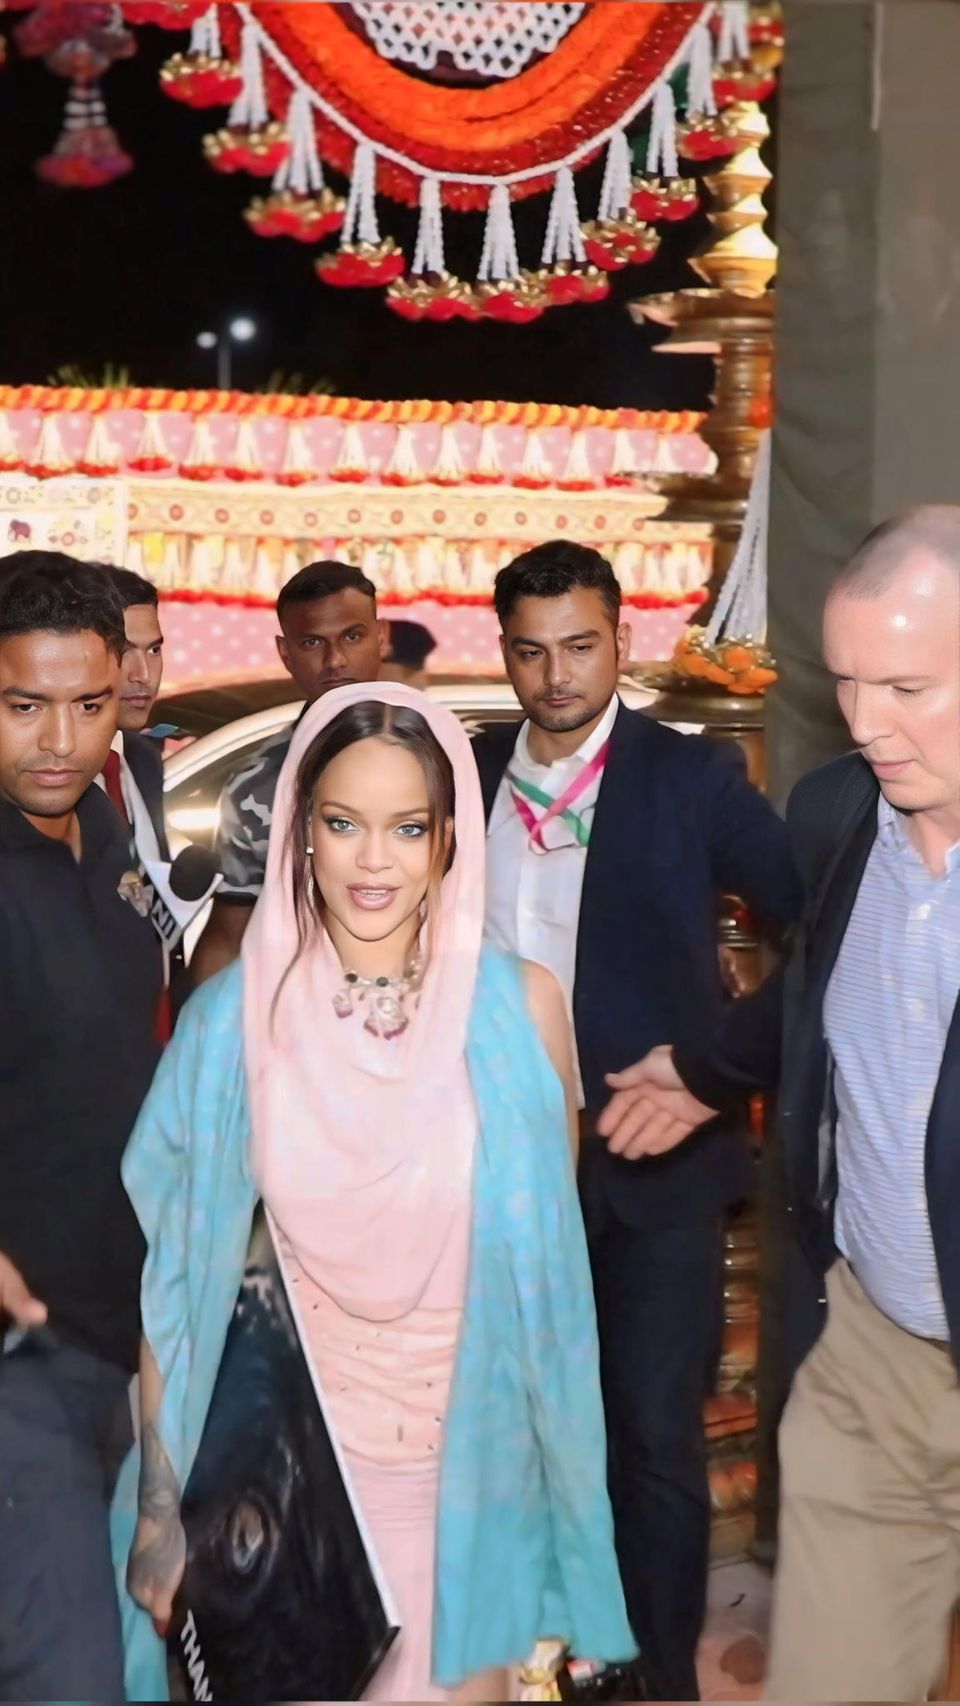 Nach der Pre-Hochzeitsfeier von Anant Ambani und Radhika Merchant zeigt sich Rihanna im Rosa-Blau-Look am Flughafen in Jamnagar.